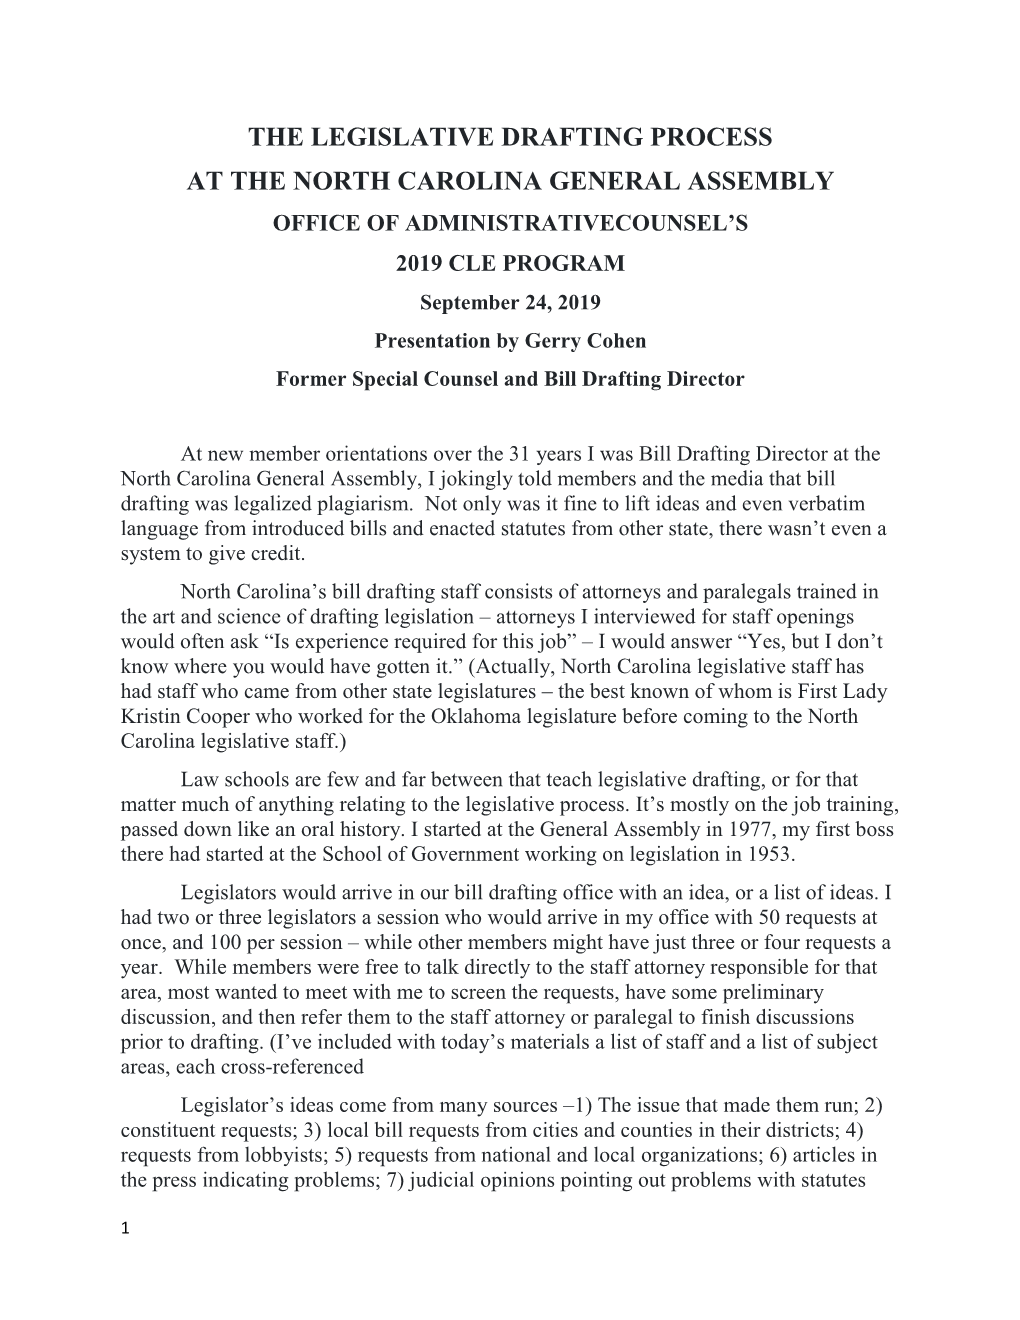 The Legislative Drafting Process at the North Carolina General Assembly